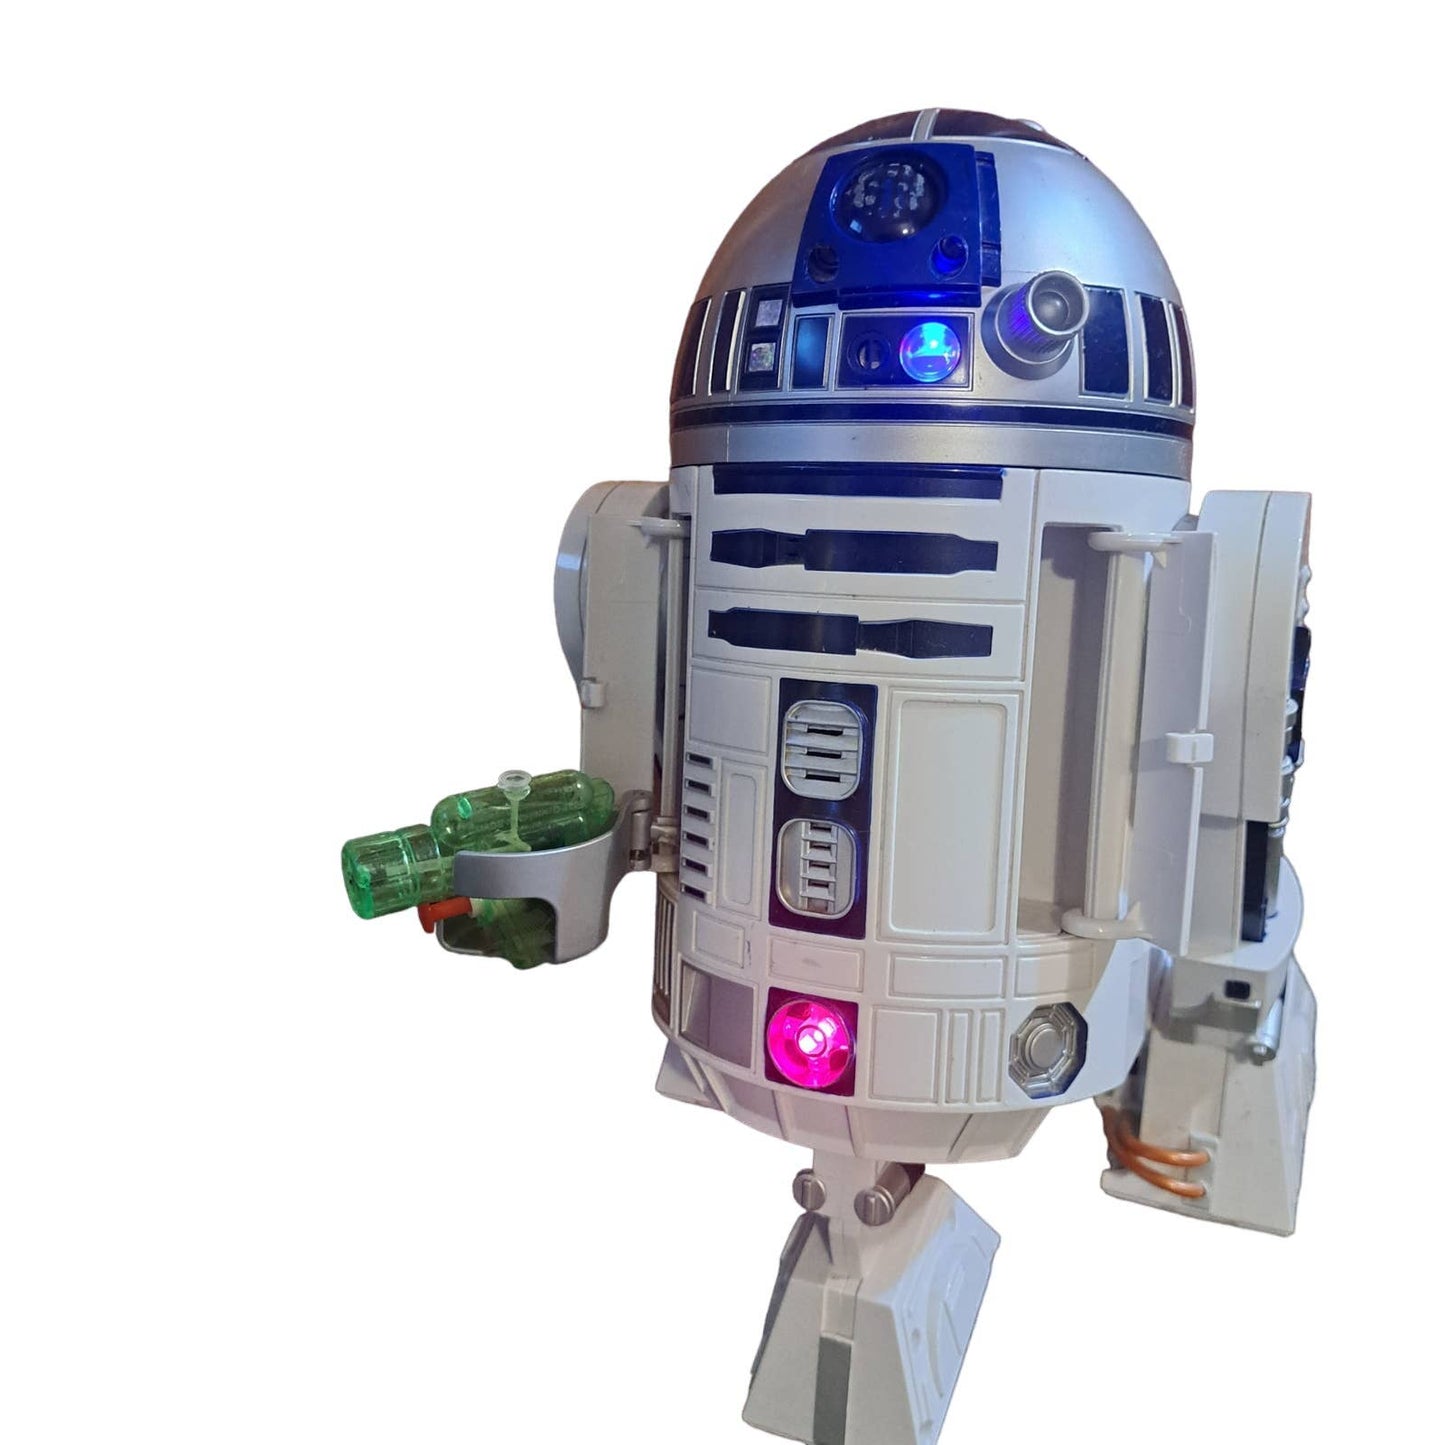 1.5 Foot INTERACTIVE whistle & beep fun- R2-D2 Super Cute Droid friend 4ever